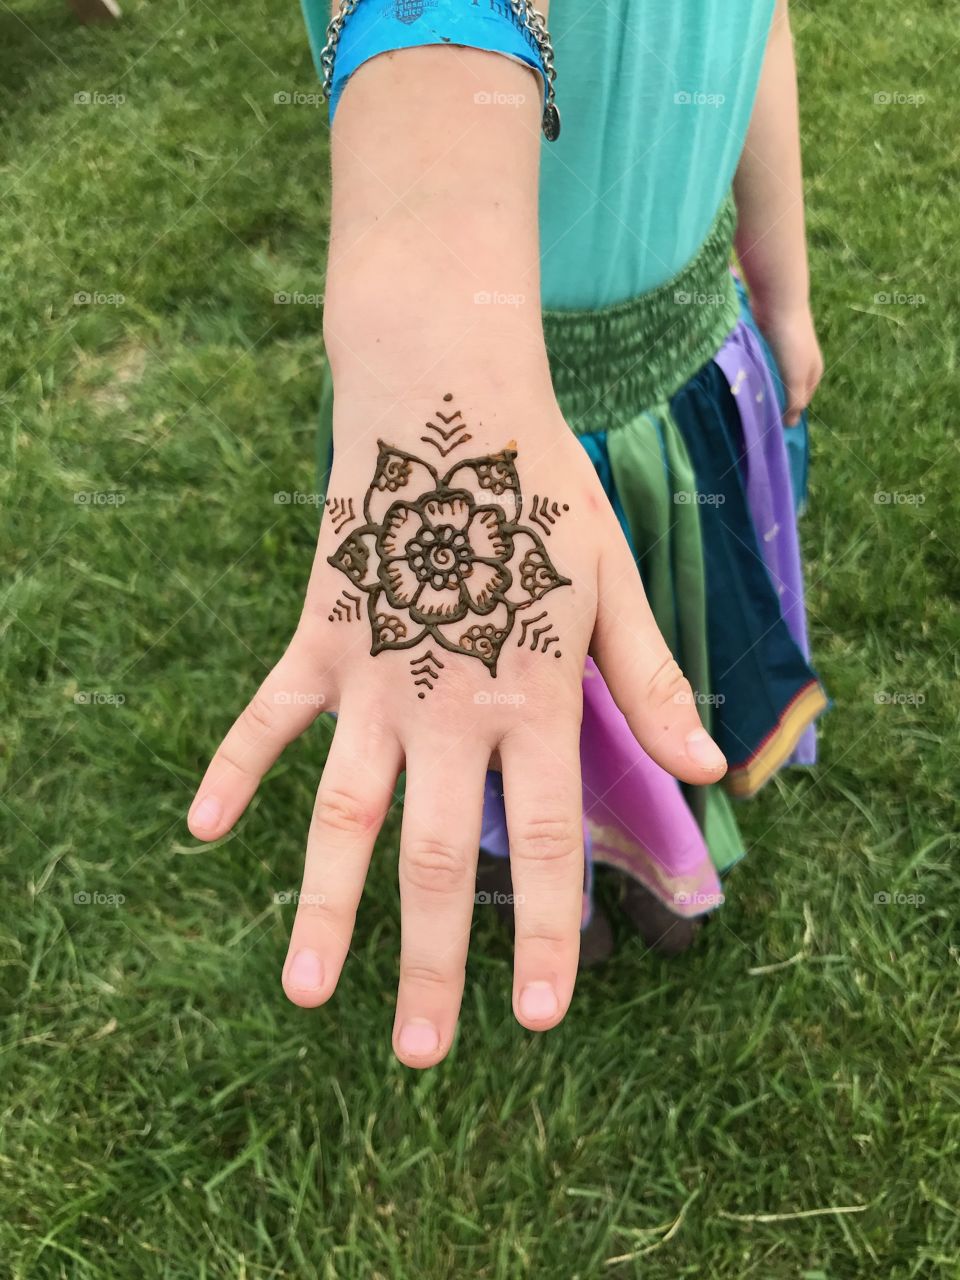 Renaissance meets henna